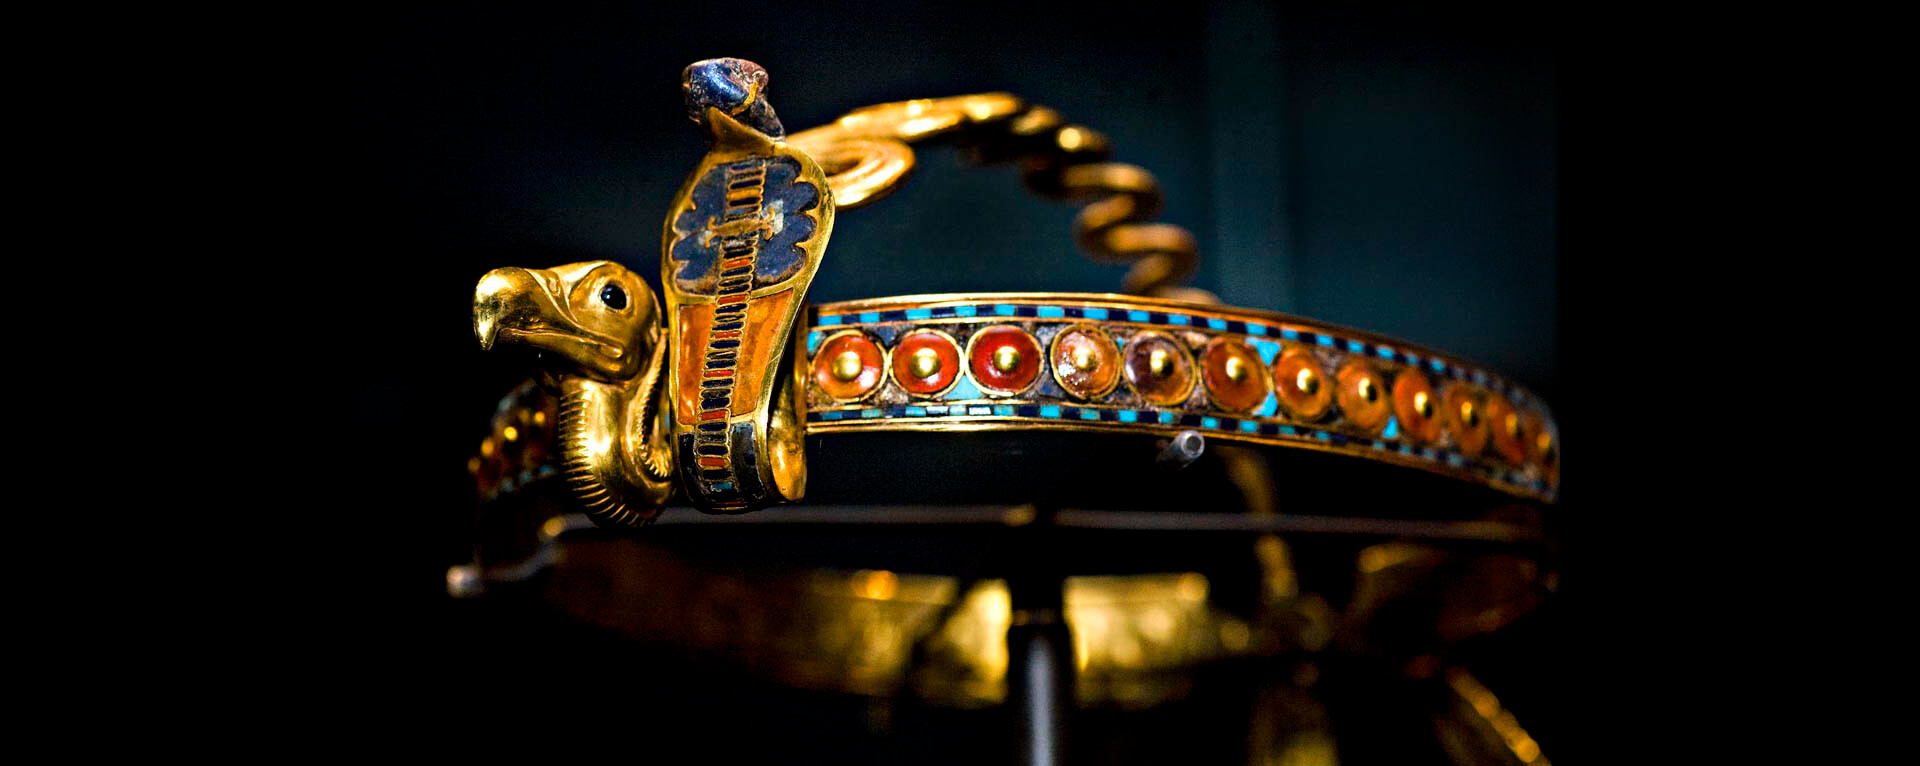 تاریخچه جواهرات ثابت می کند که مد طلا و جواهر می تواند هنر باشد و باید در نظر گرفته شود7